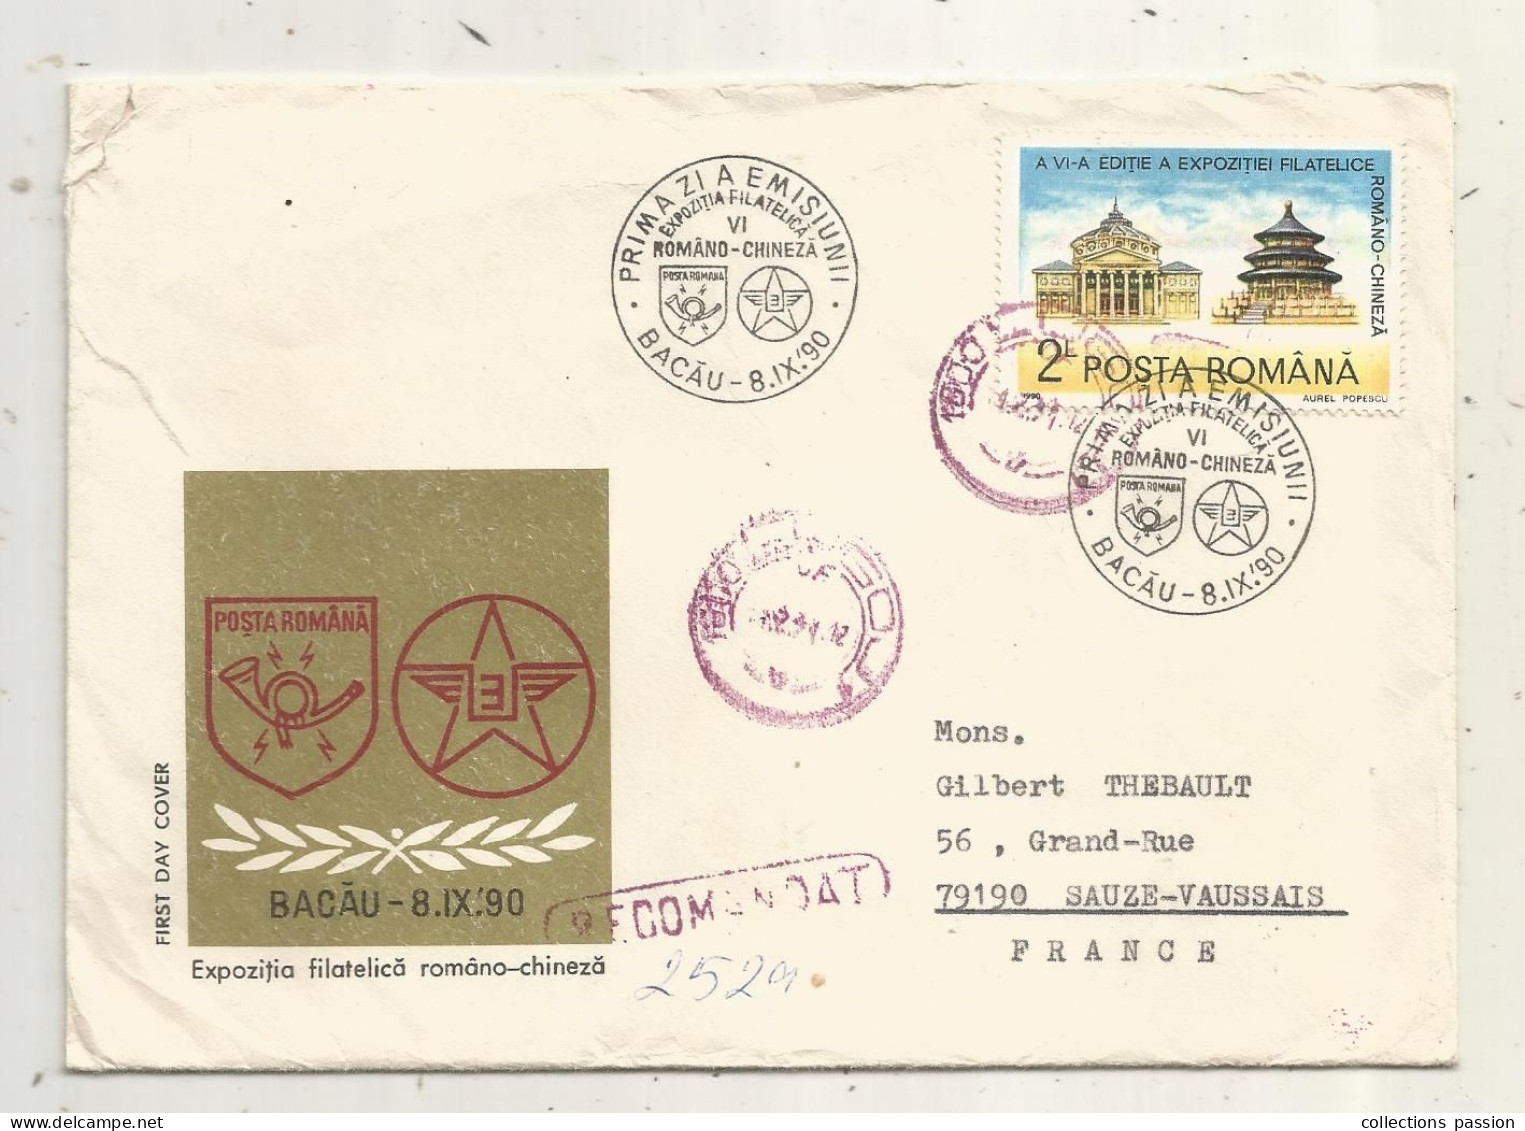 Lettre, Roumanie, Posta Romania,FDC, BACAU, 8.IX.90, Expozitia Filatelica Romano-Chineza, RECOMANDAT, 5 Timbres, 3 Scans - Covers & Documents